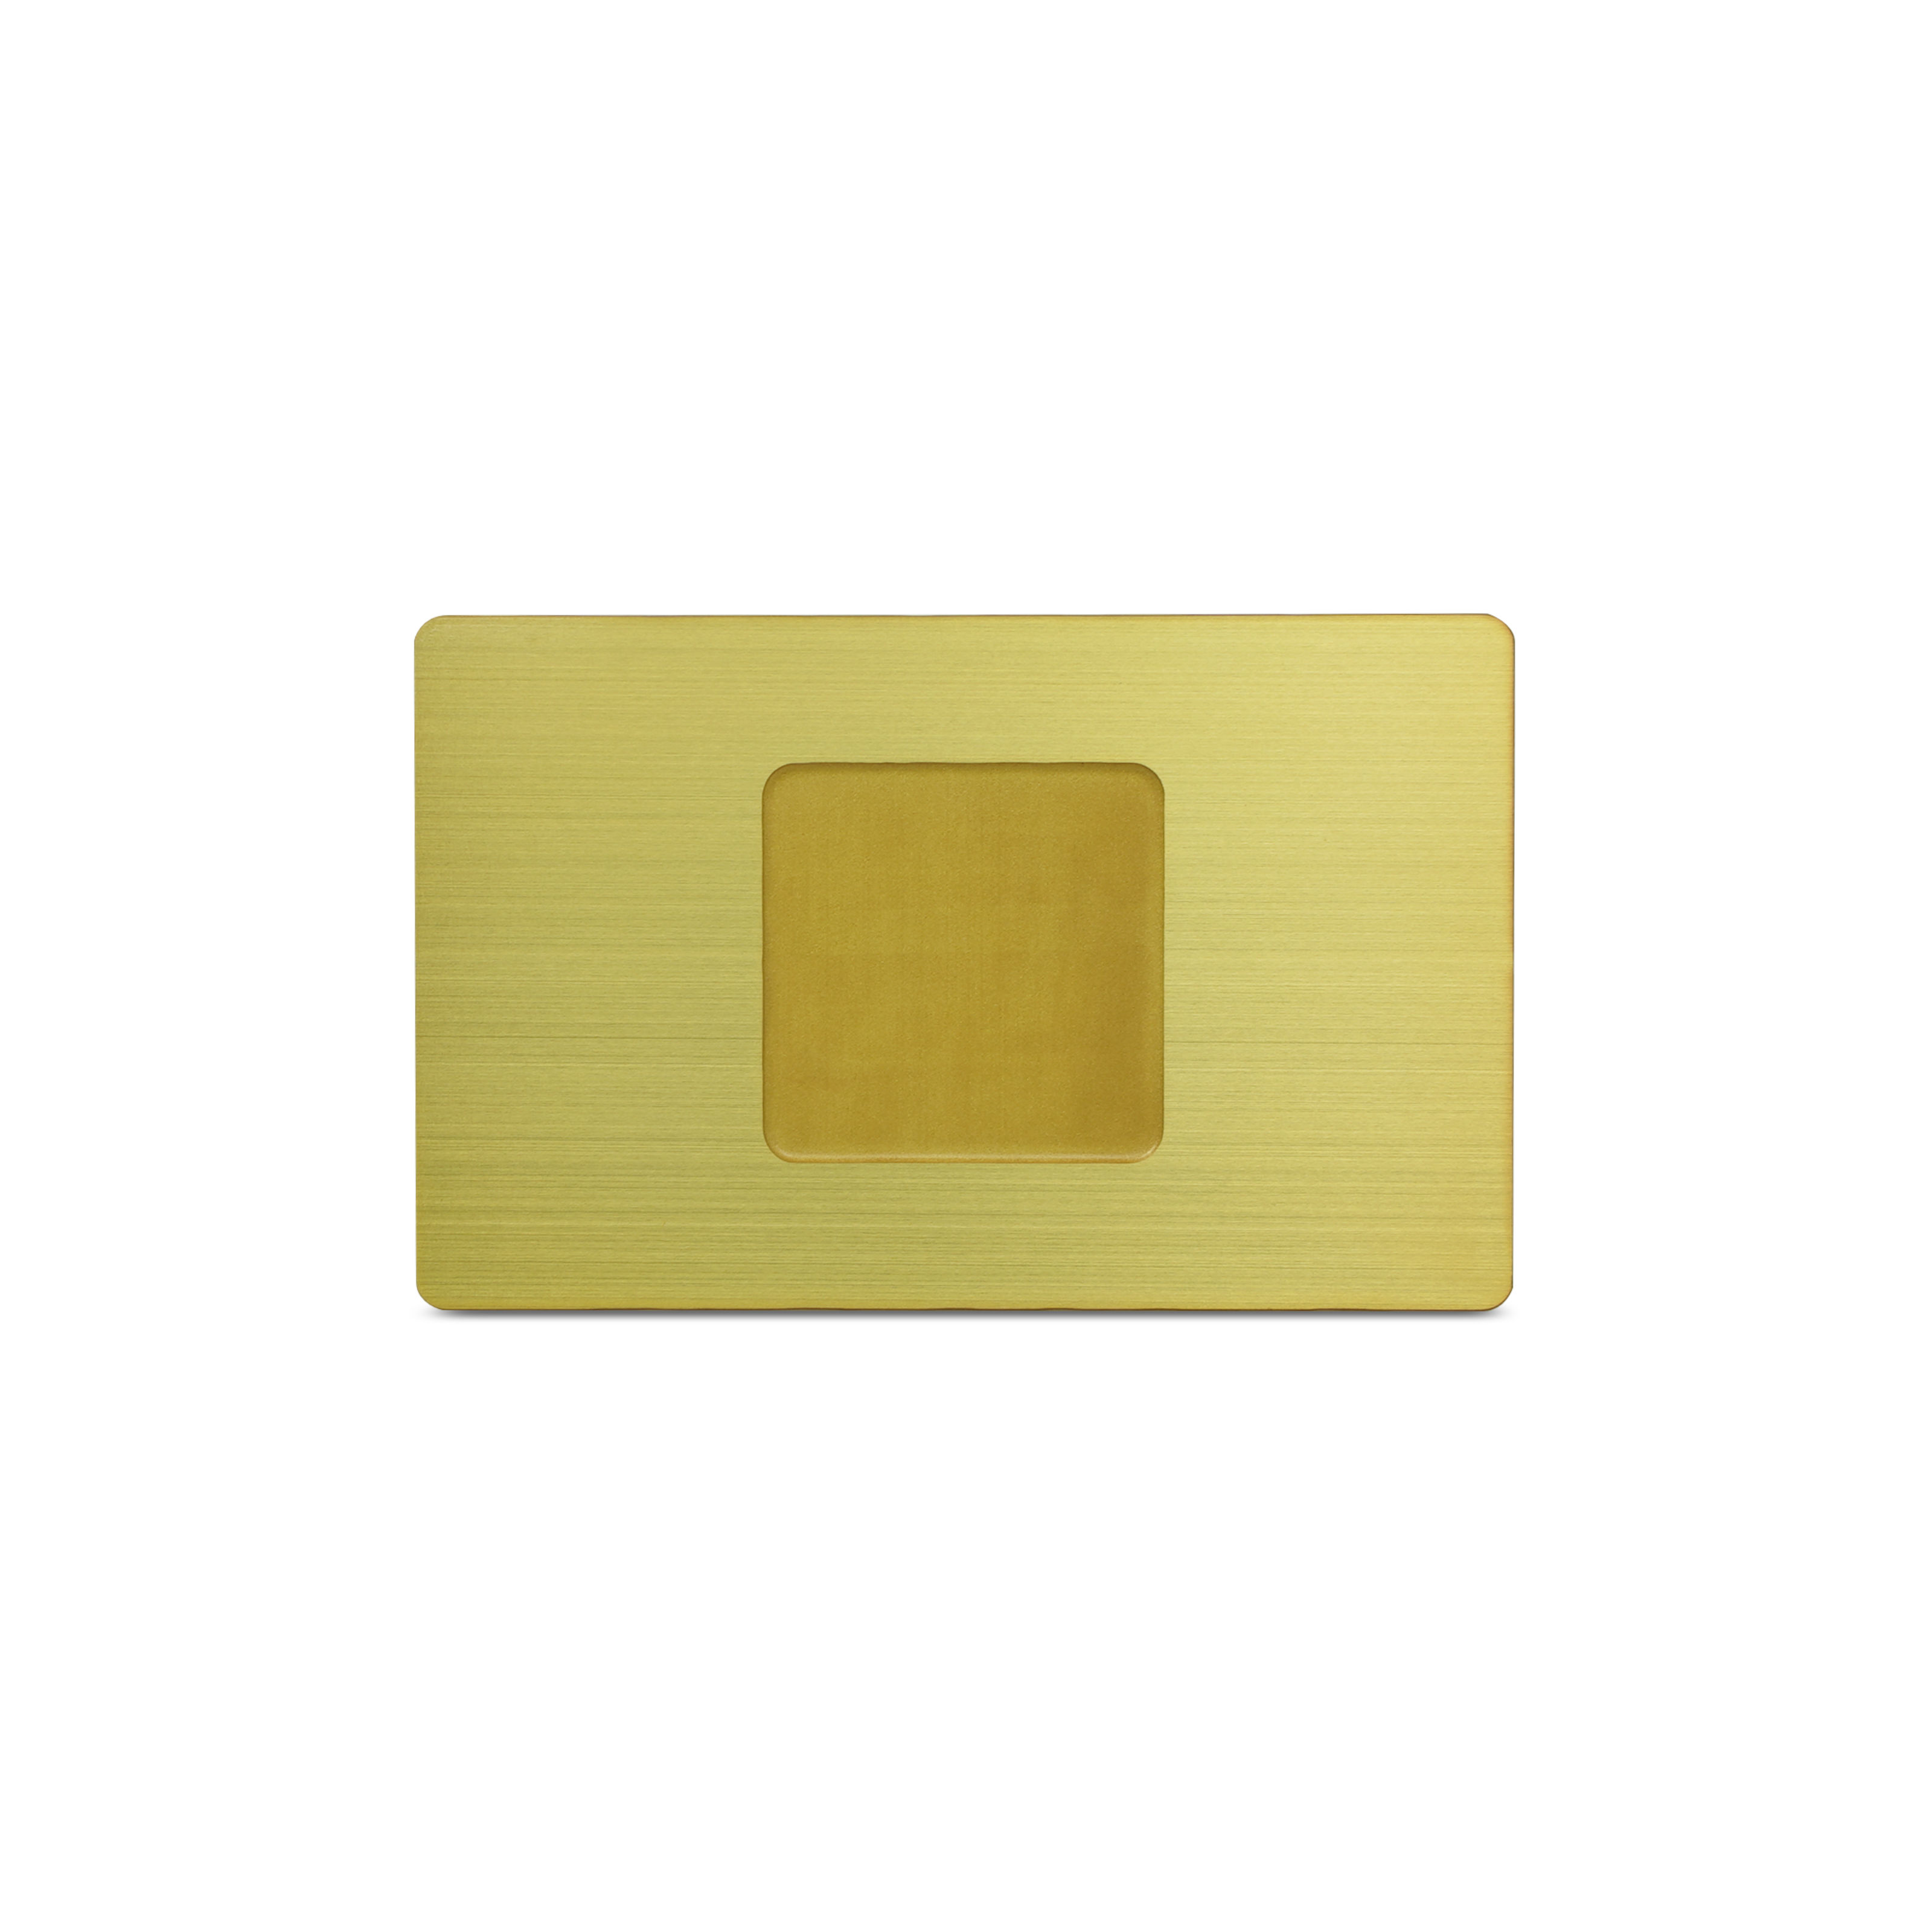 Rückseite der Metallkarte in Gold mit Einkerbung für den NFC Sticker